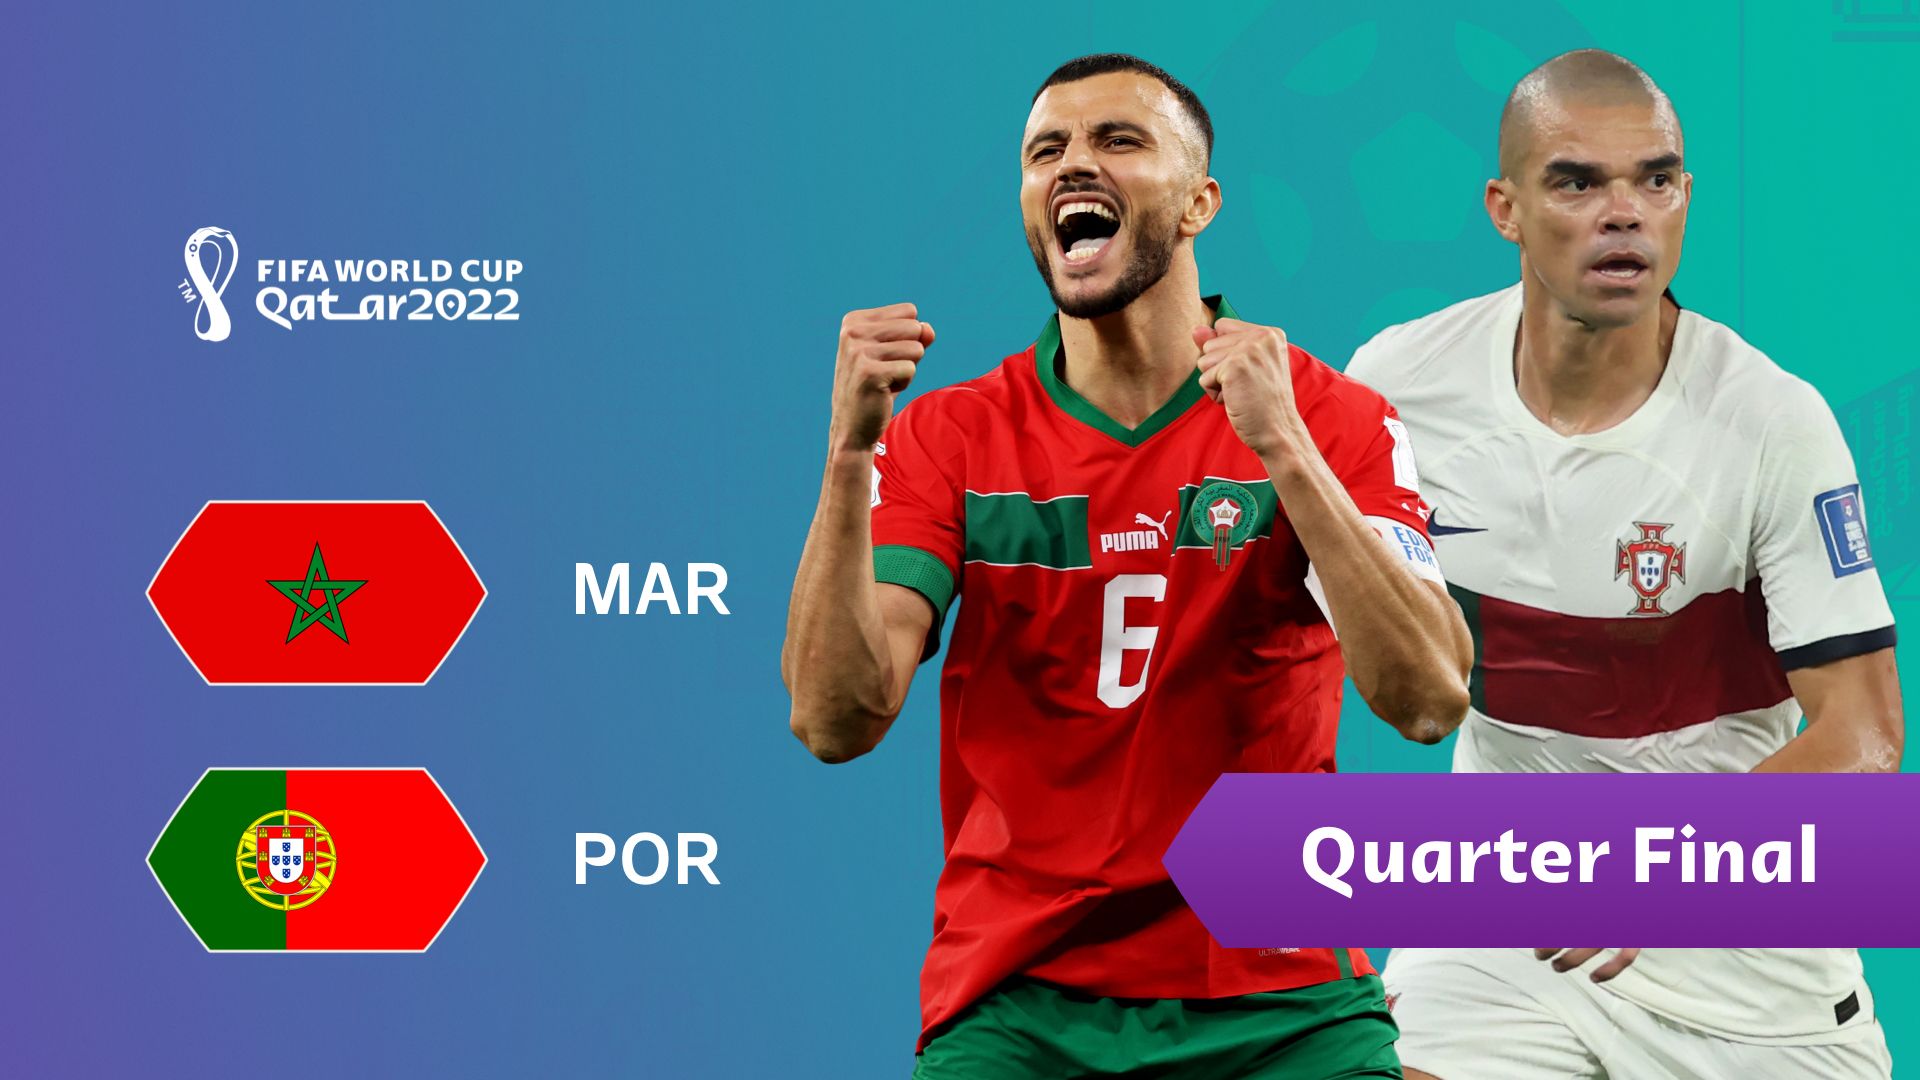 Quyết đấu không khoan nhượng, nhưng trận Maroc vs Bồ Đào Nha khó có “mưa thẻ” - Ảnh 1.